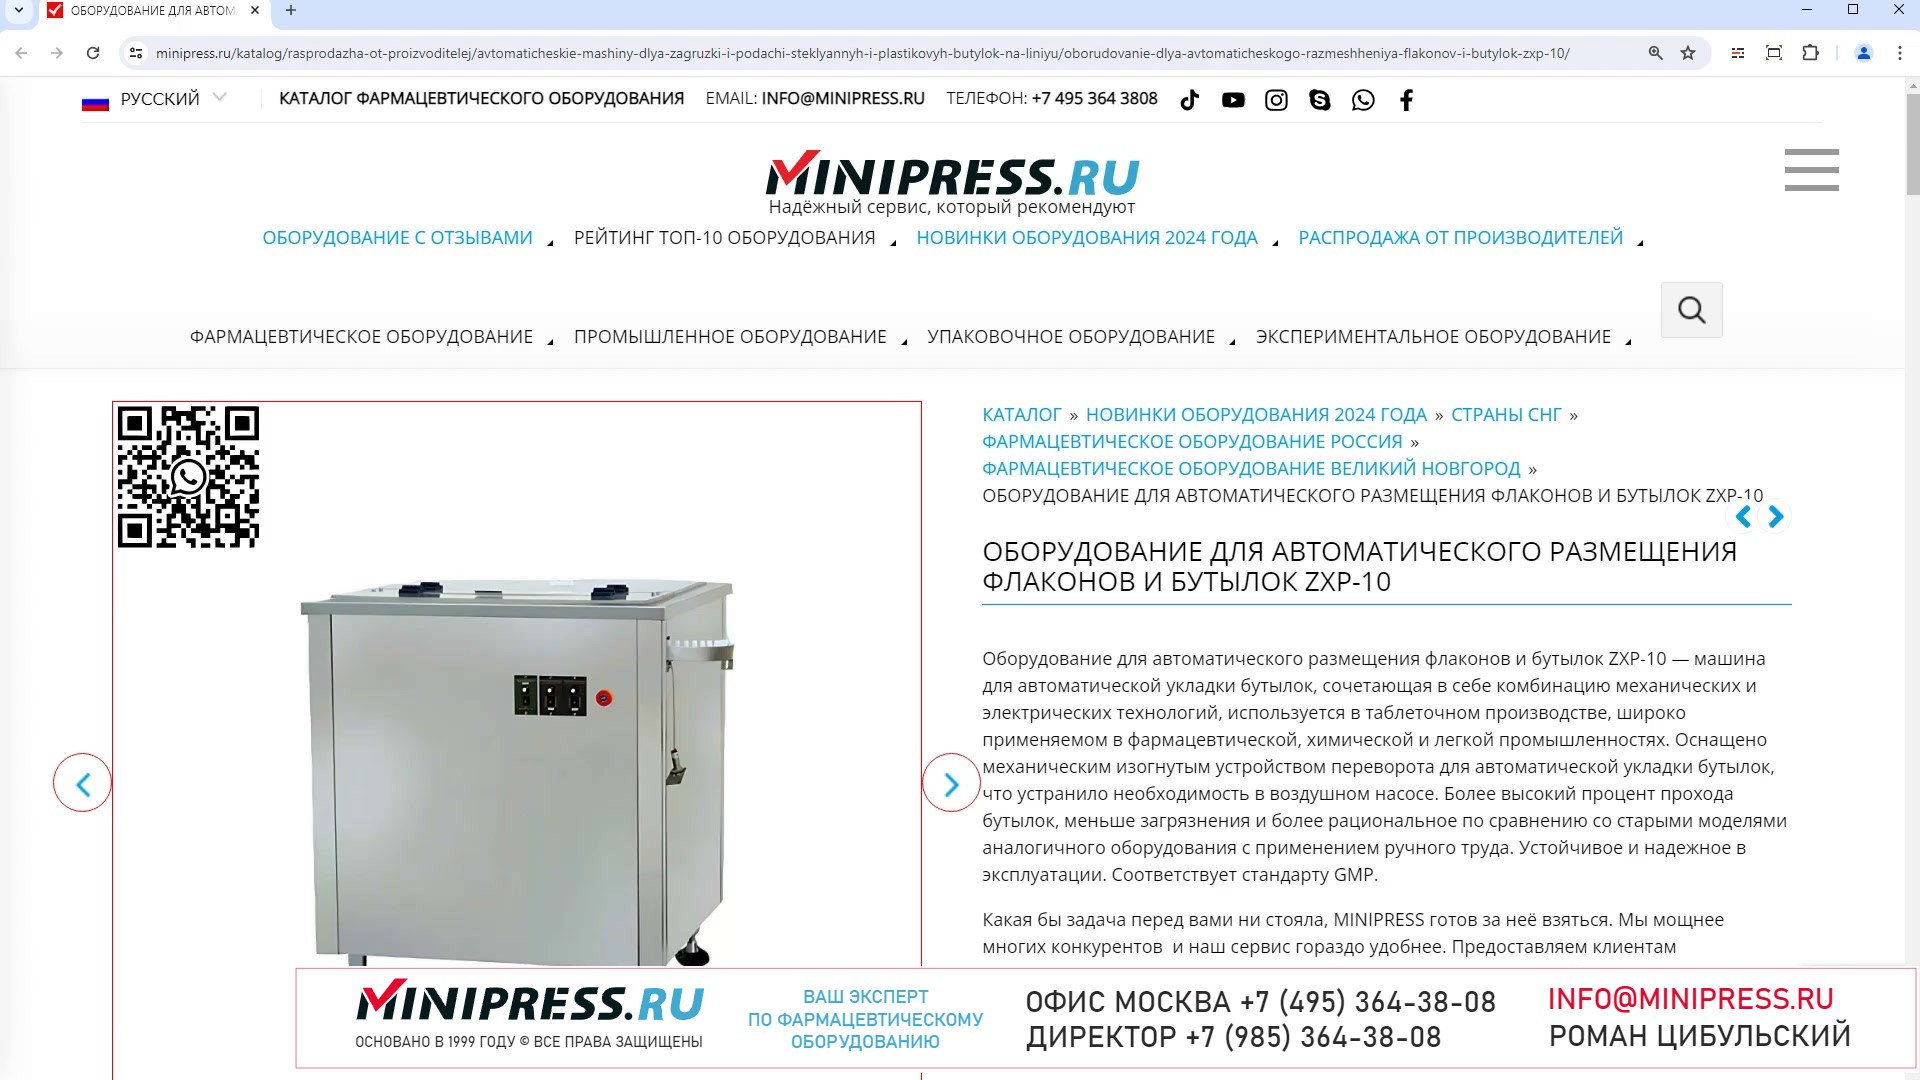 Minipress.ru Оборудование для автоматического размещения флаконов и бутылок ZXP-10